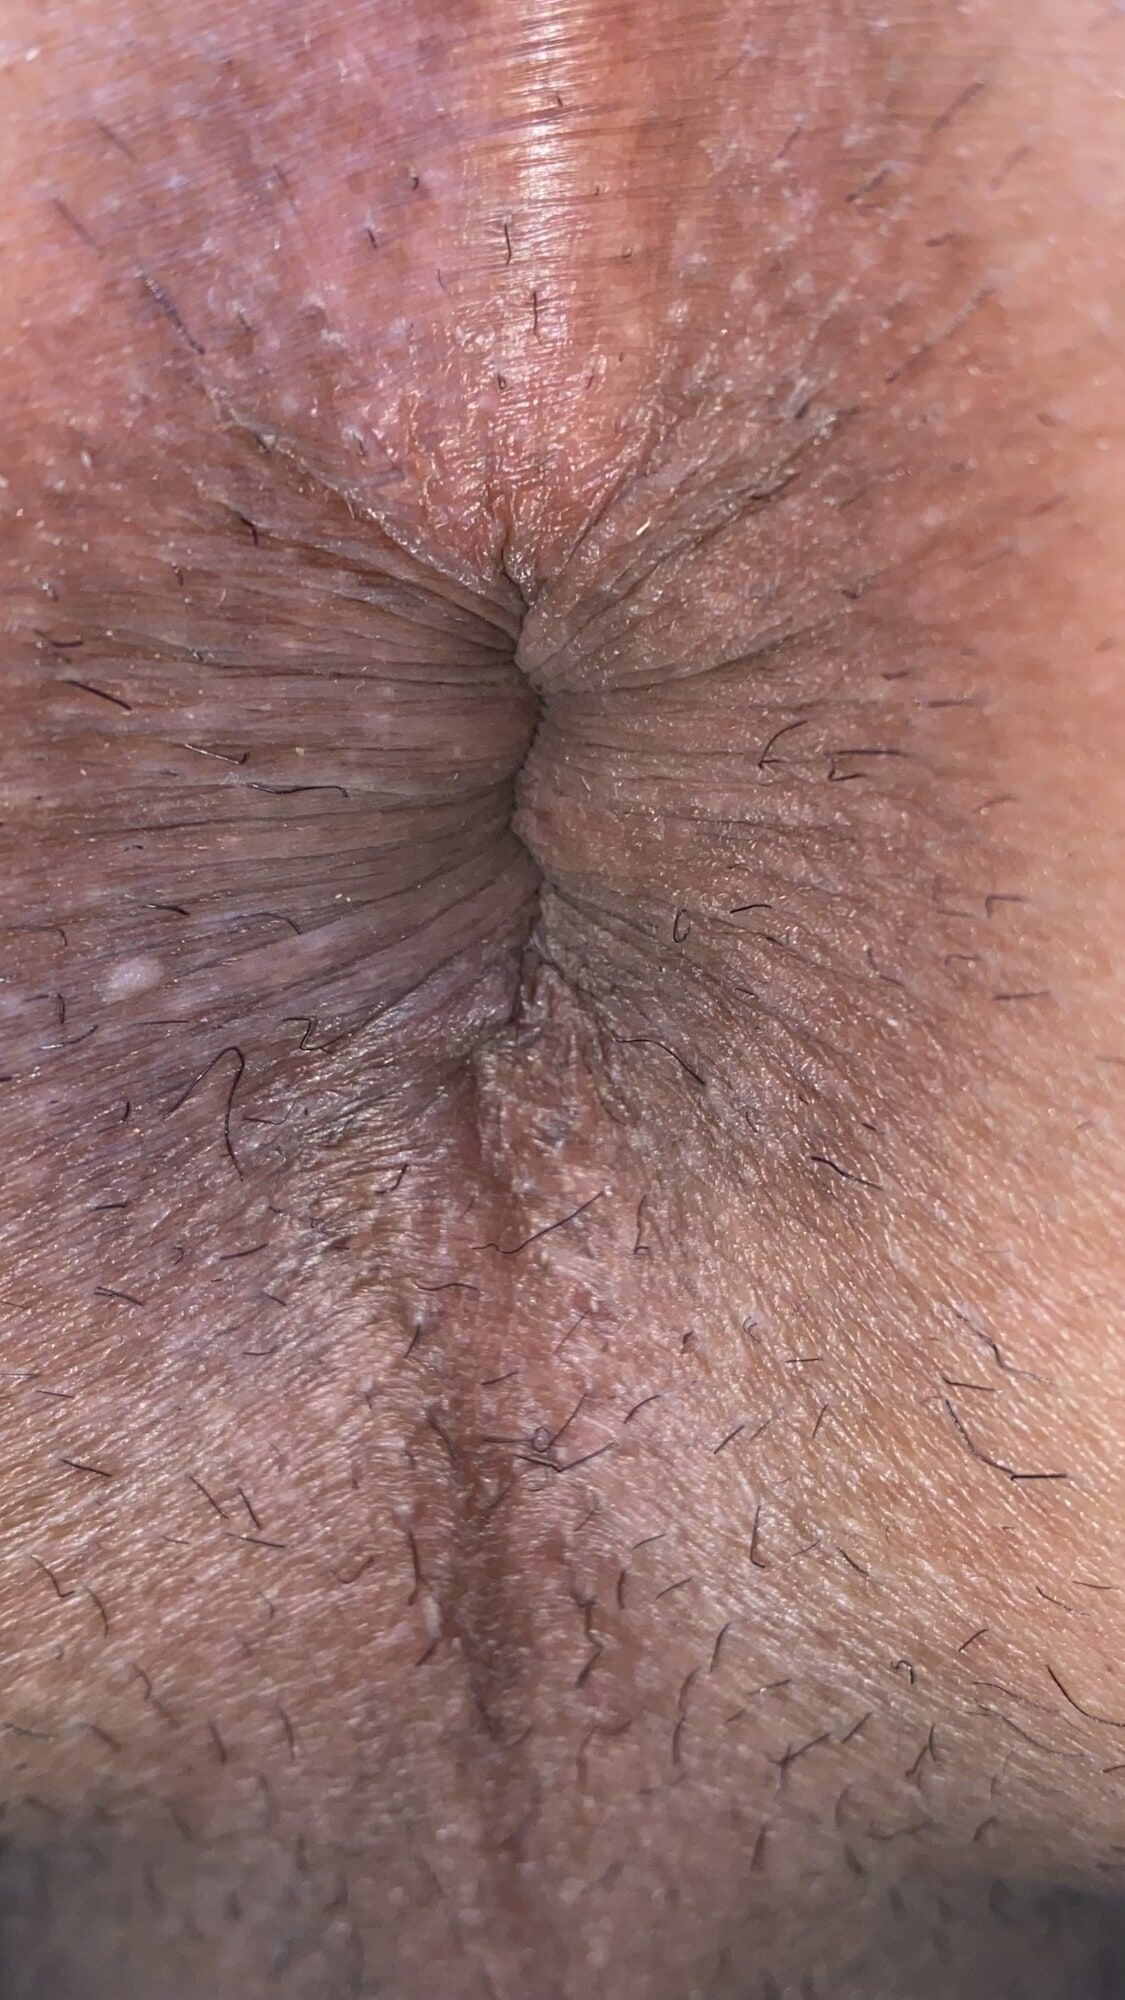 Close-up of a man's anus #18